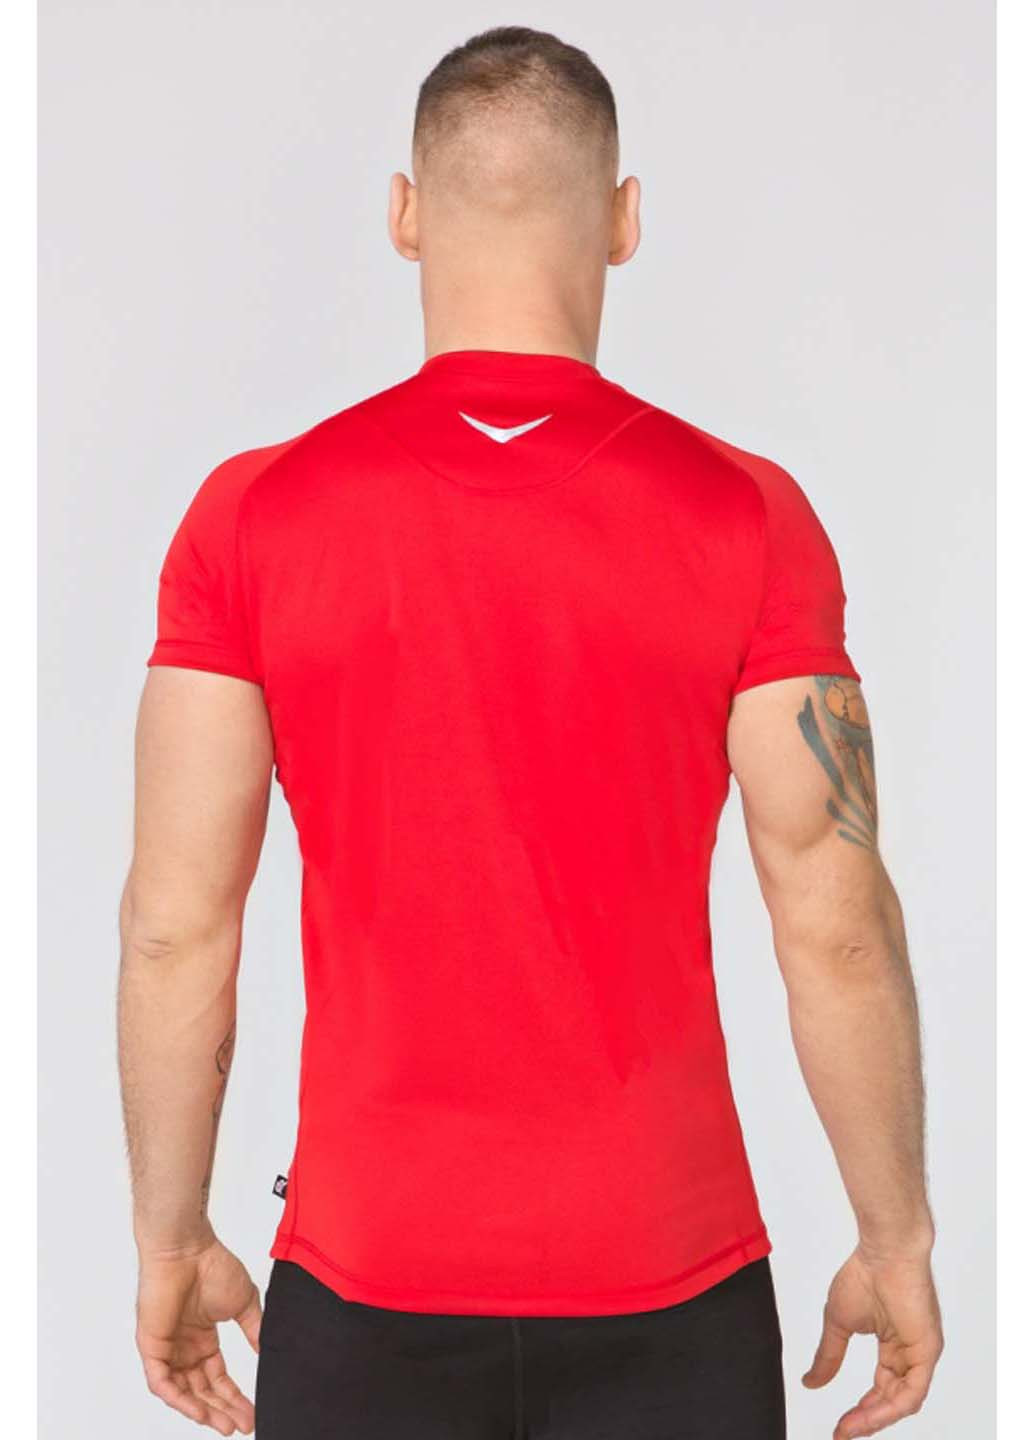 Спортивна футболка Radical однотонна червона спортивна поліестер